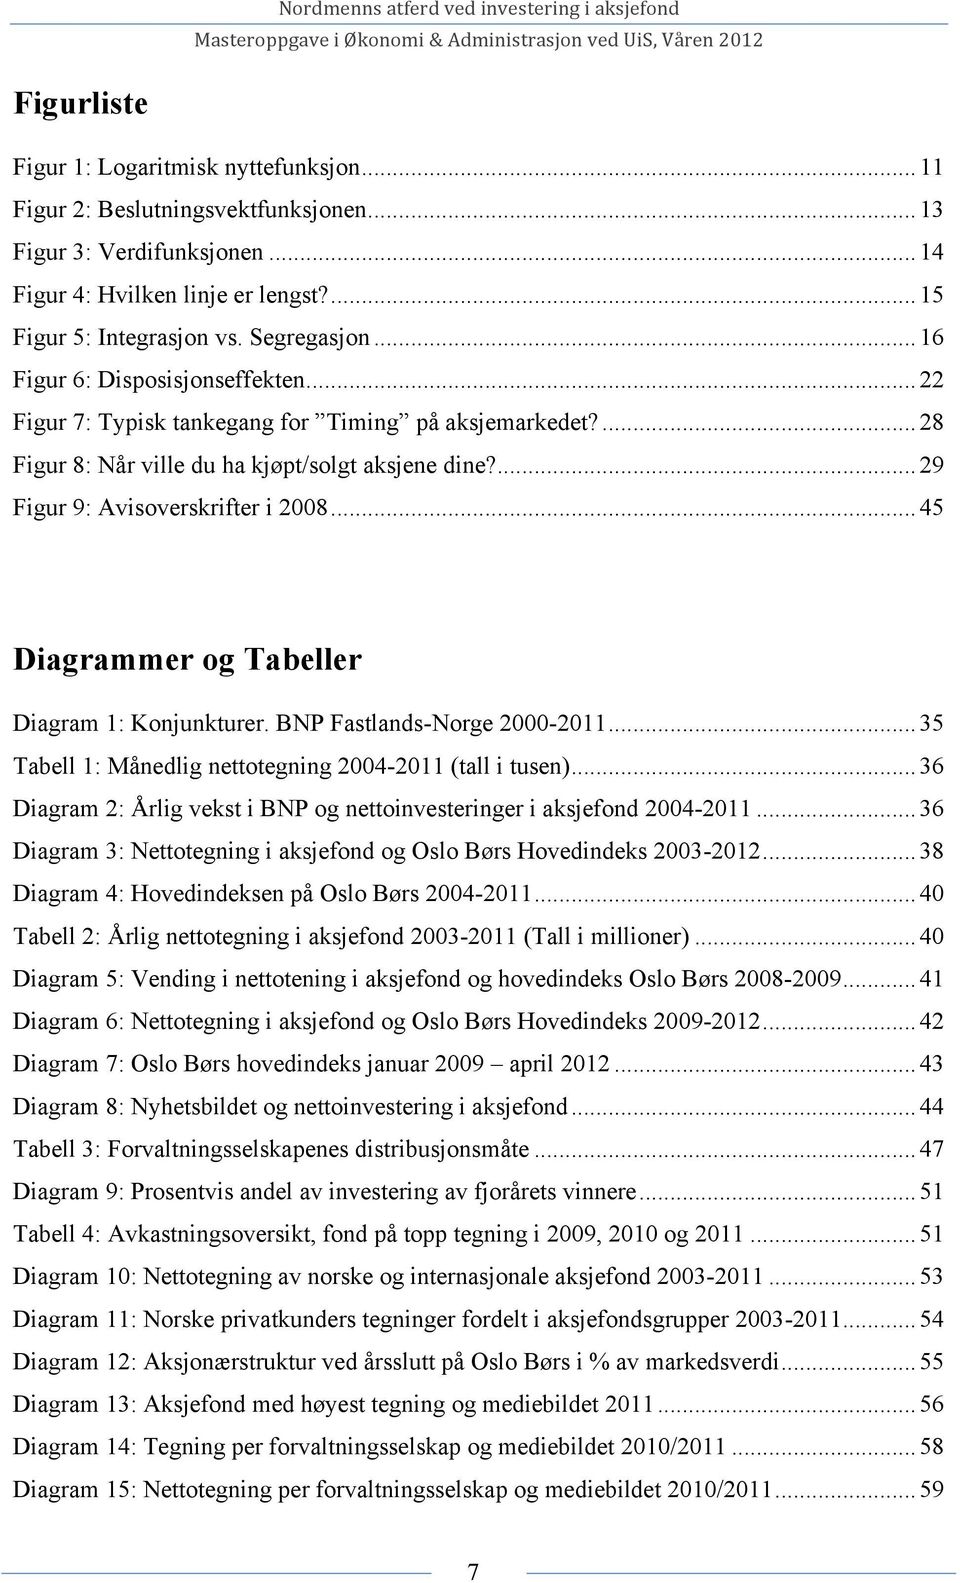 ... 29 Figur 9: Avisoverskrifter i 2008... 45 Diagrammer og Tabeller Diagram 1: Konjunkturer. BNP Fastlands-Norge 2000-2011... 35 Tabell 1: Månedlig nettotegning 2004-2011 (tall i tusen).